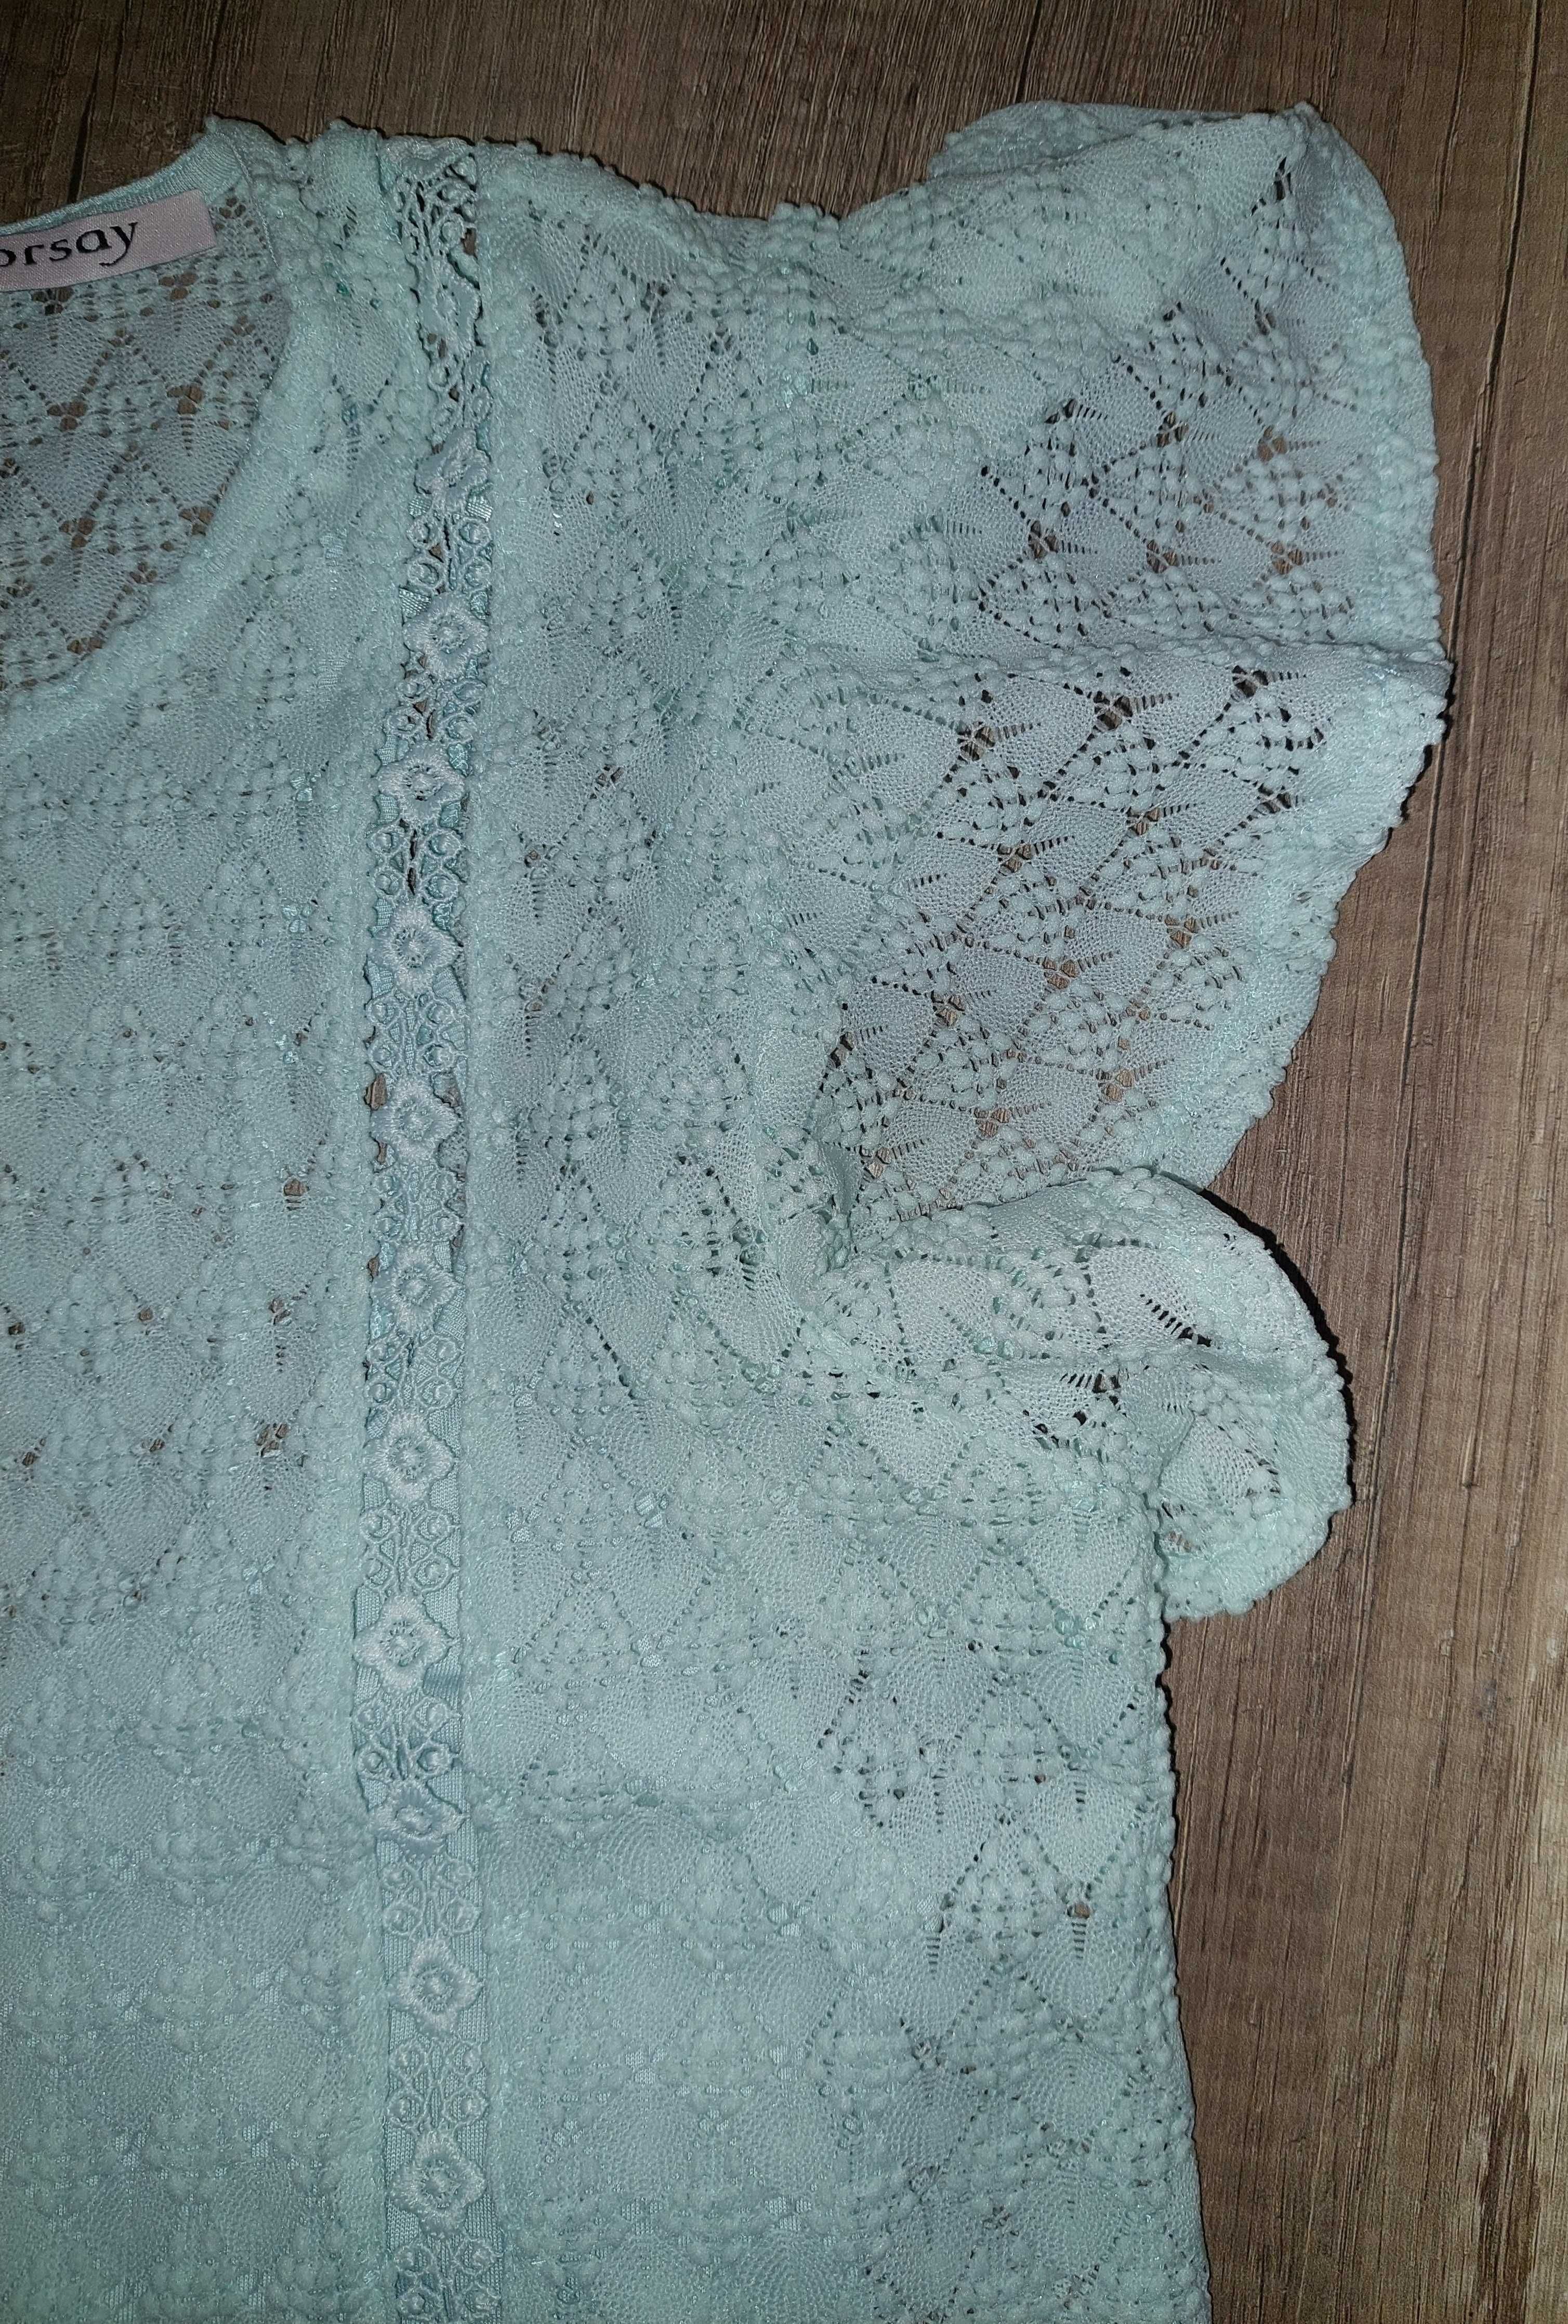 Miętowa ażurowa bluzka Orsay rozmiar M stan idealny ubrana 2 razy